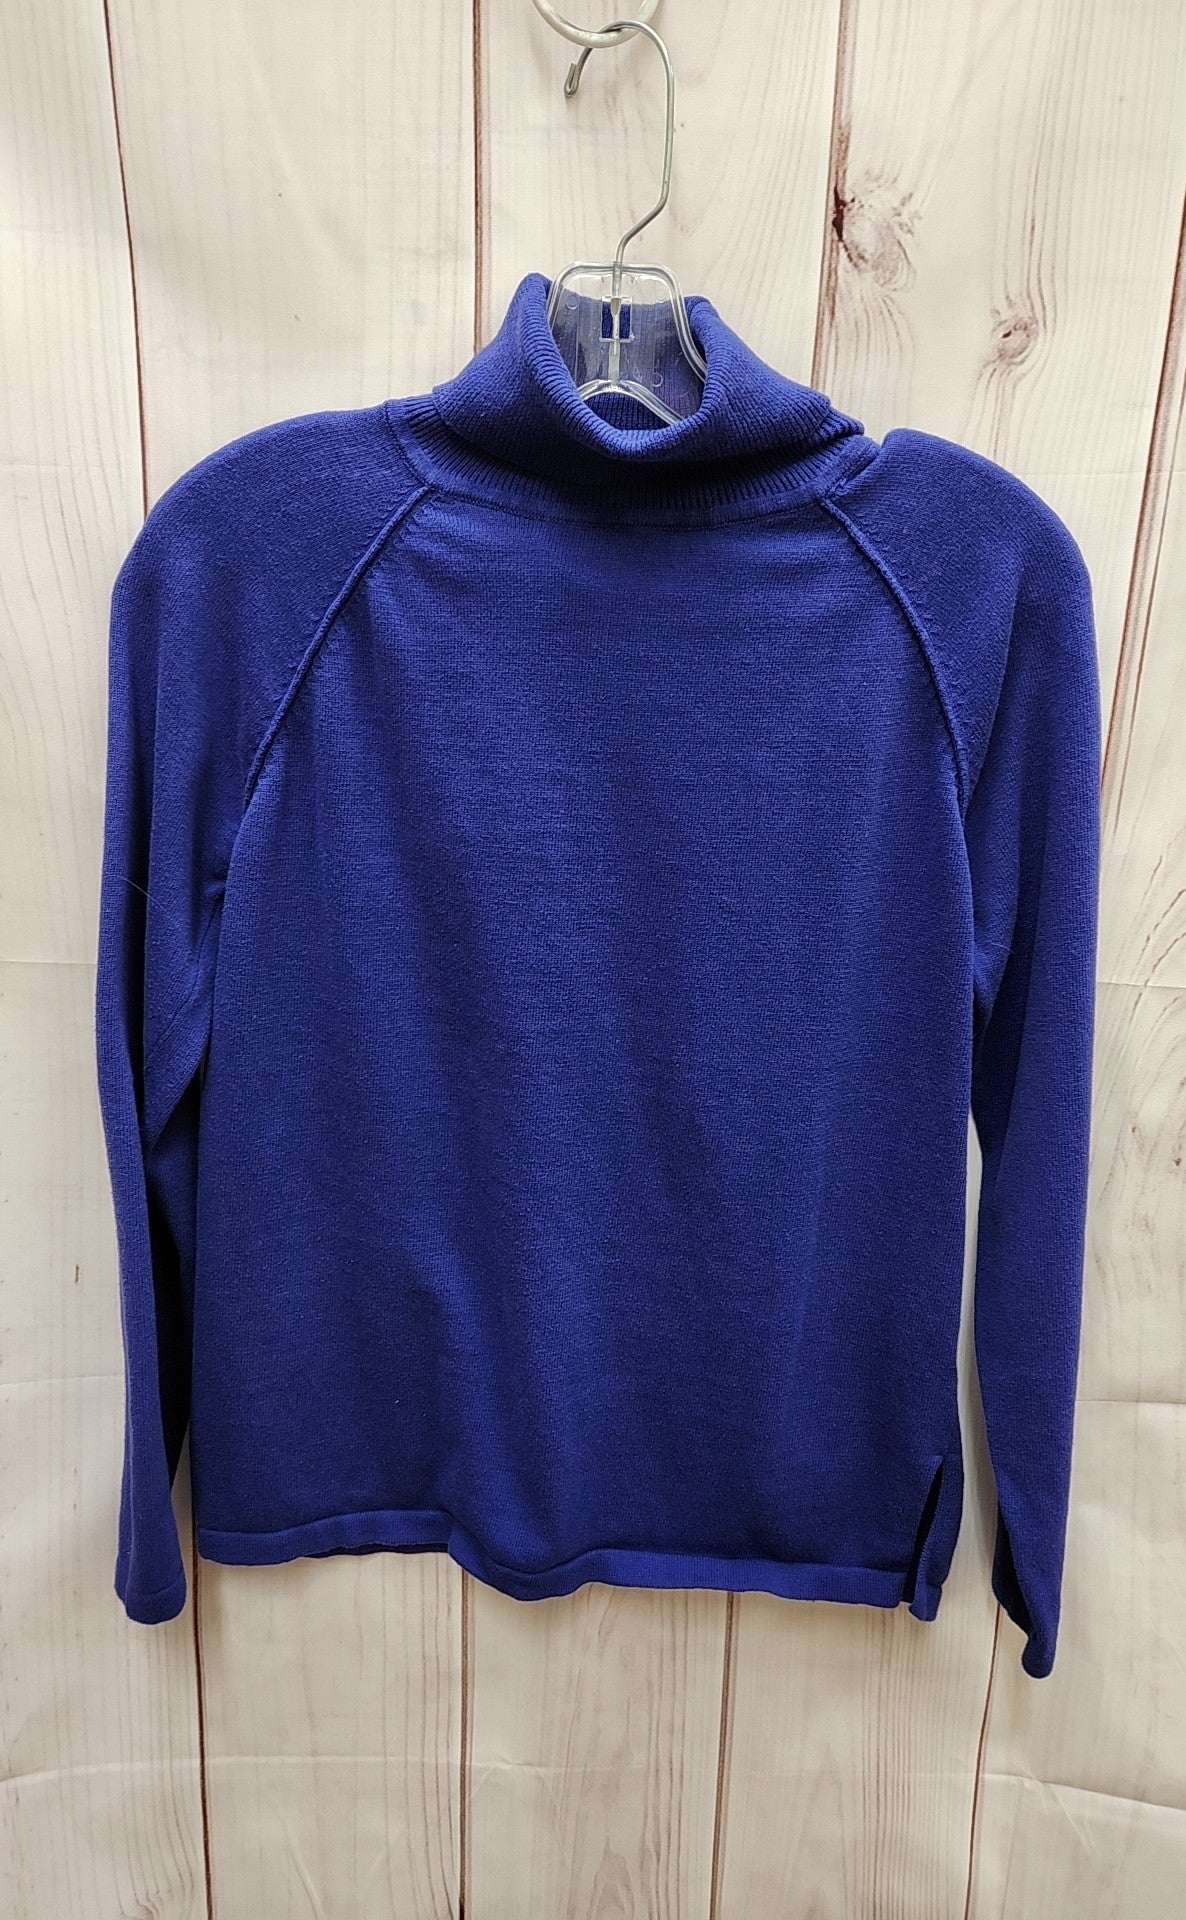 Jeanne Pierre Women's Size S Purple Sweater